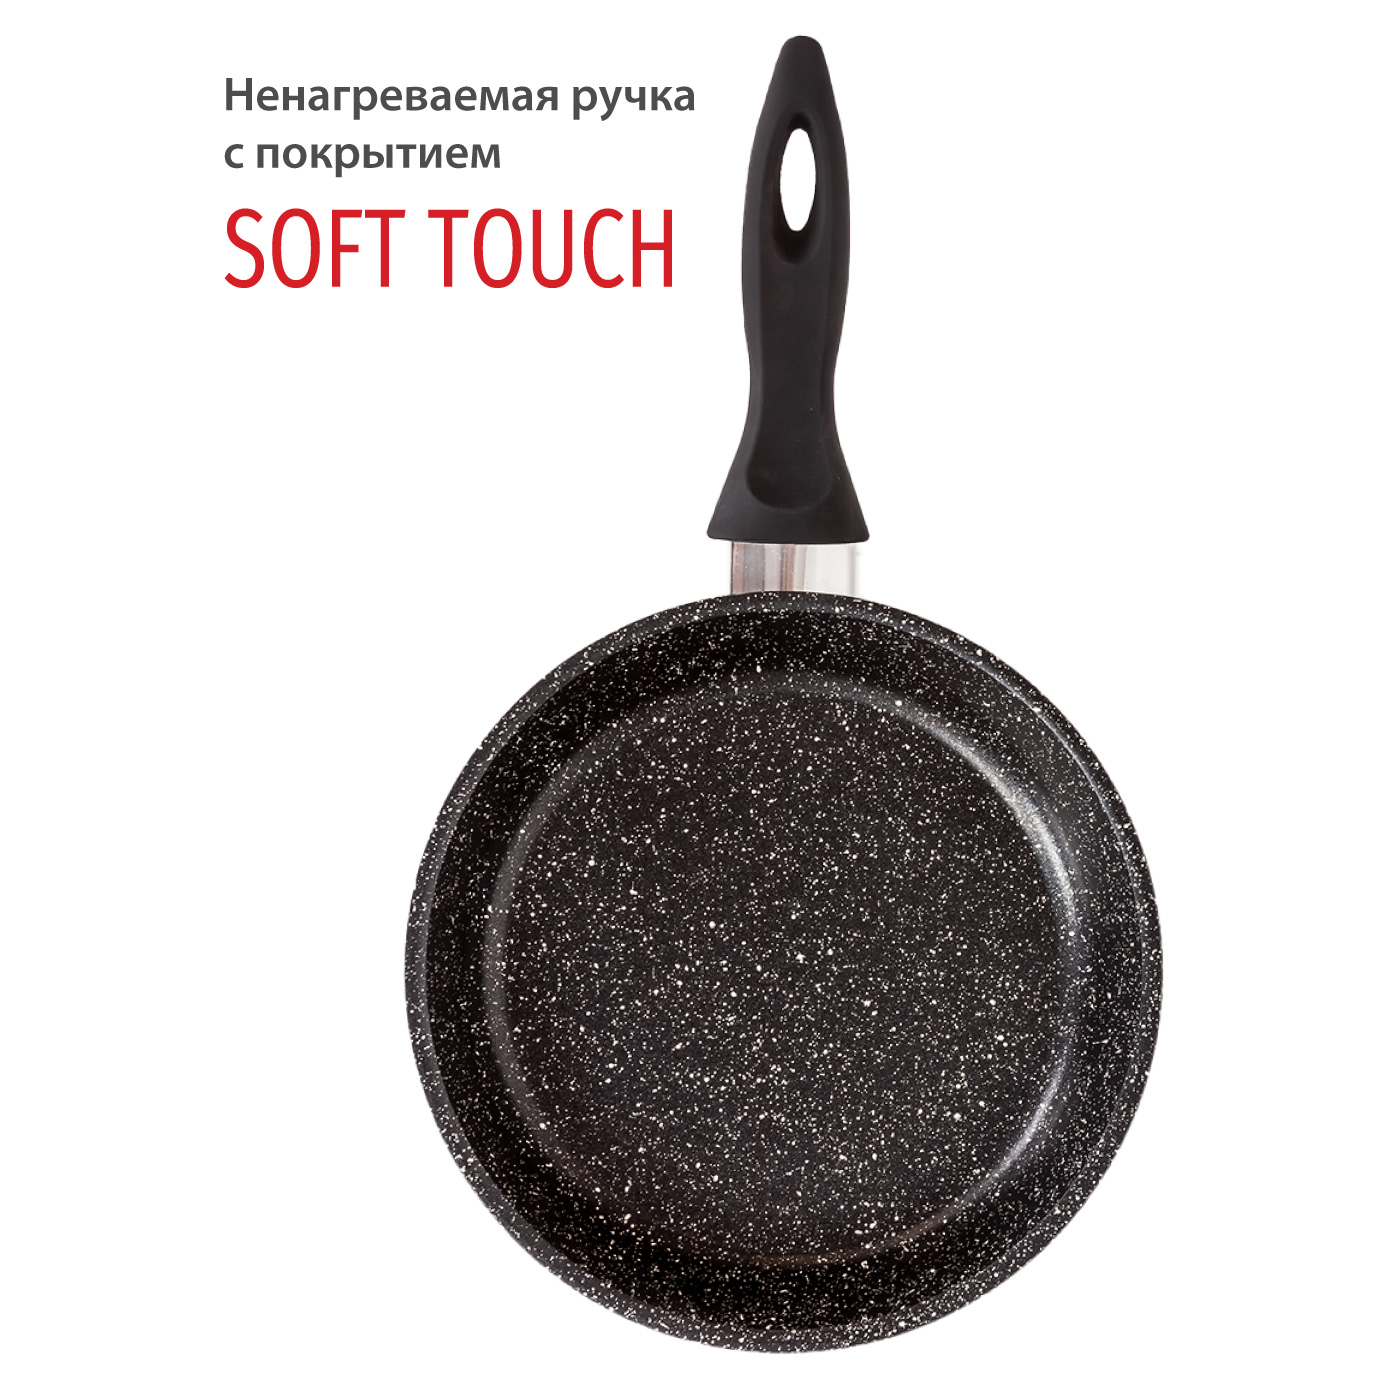 Картинка Сковорода Olivetti FP726 (26 см) по разумной цене купить в интернет магазине mall.su